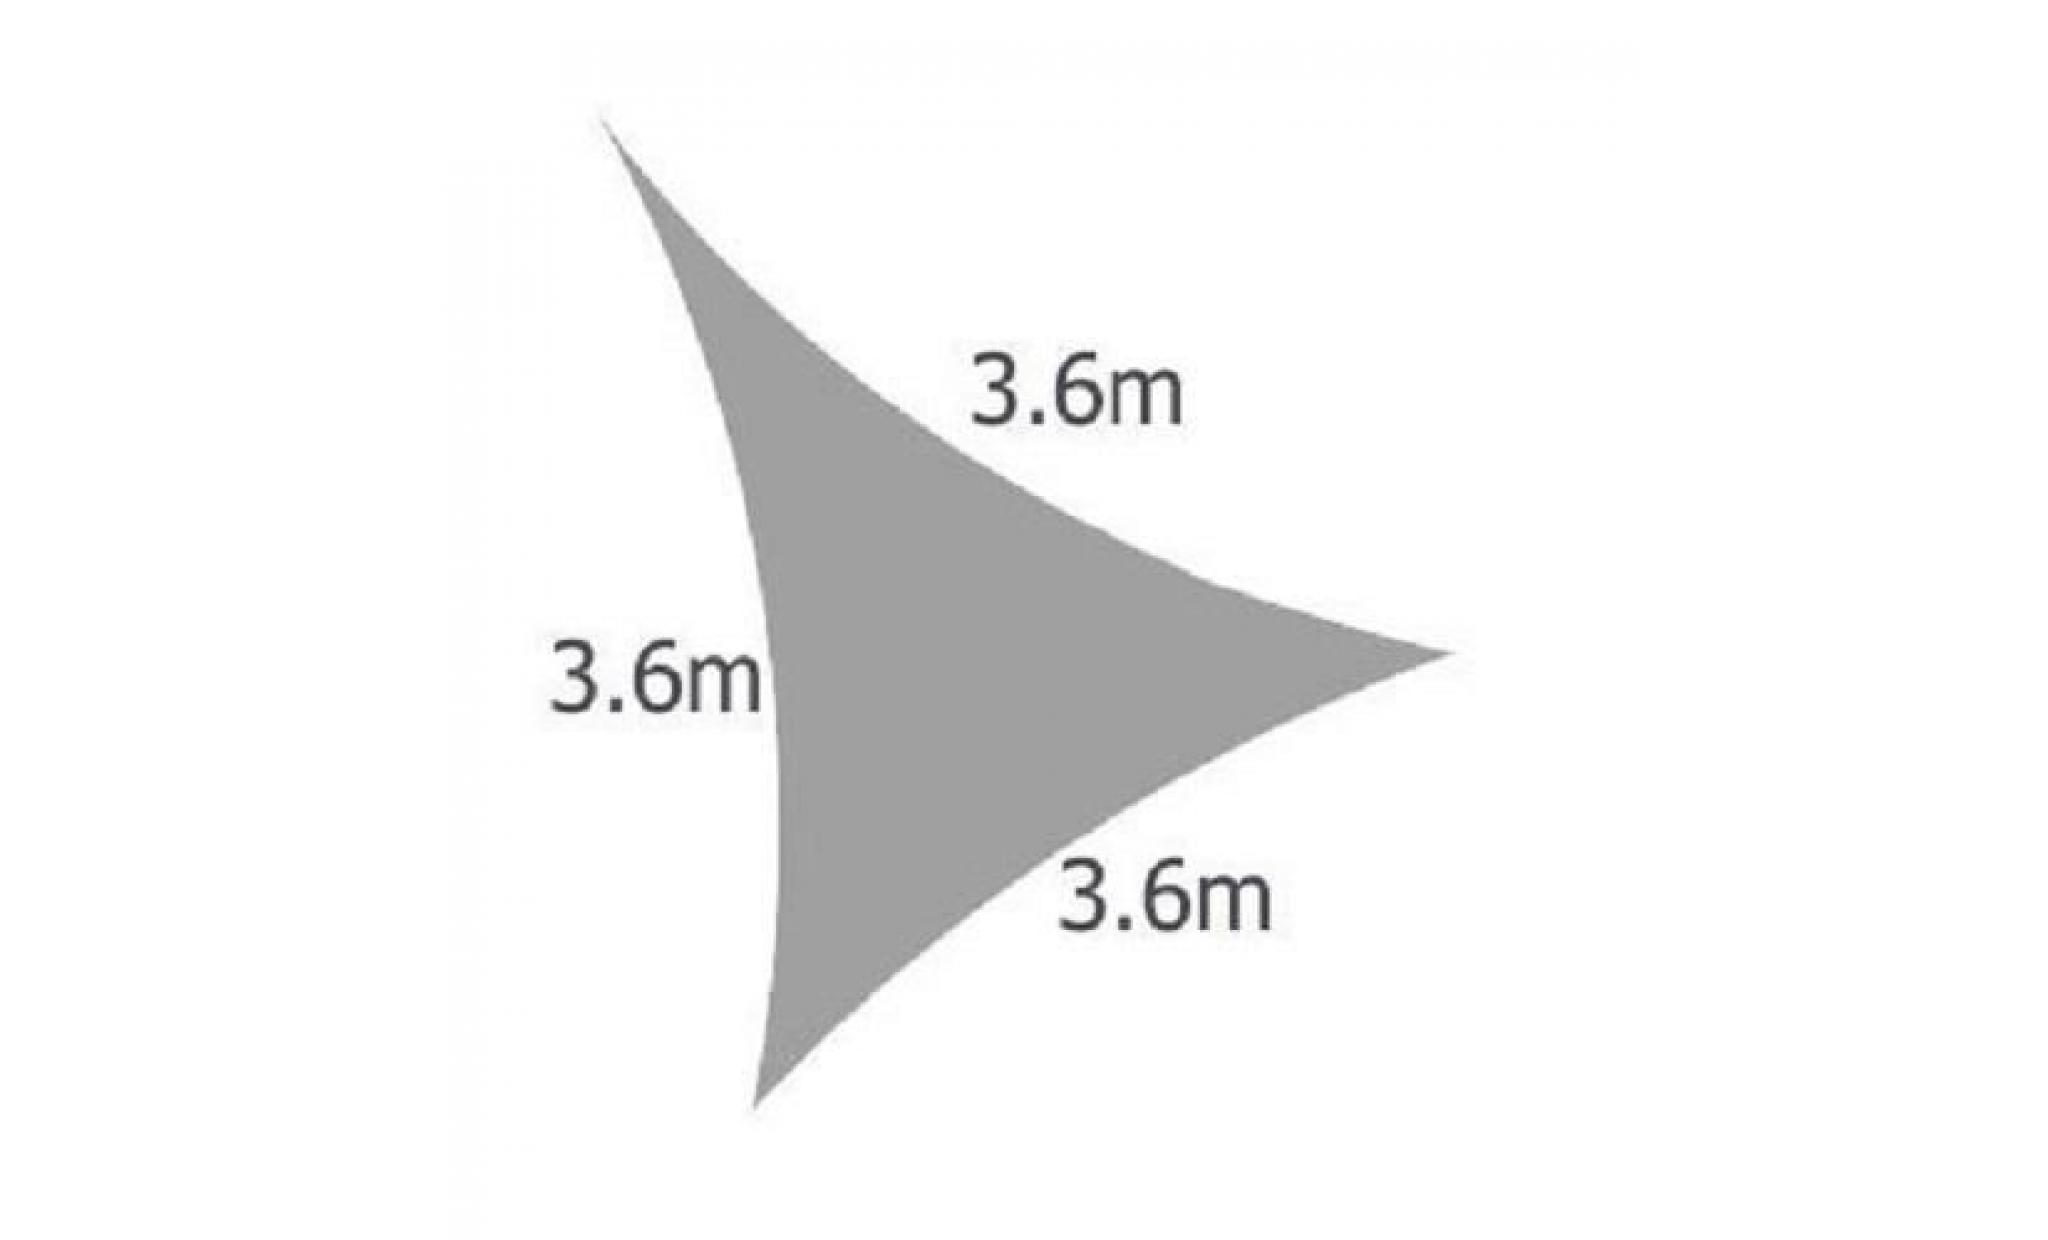 voile d'ombrage ivoire triangle 3,6m   imperméable   160g/m2   kookaburra pas cher